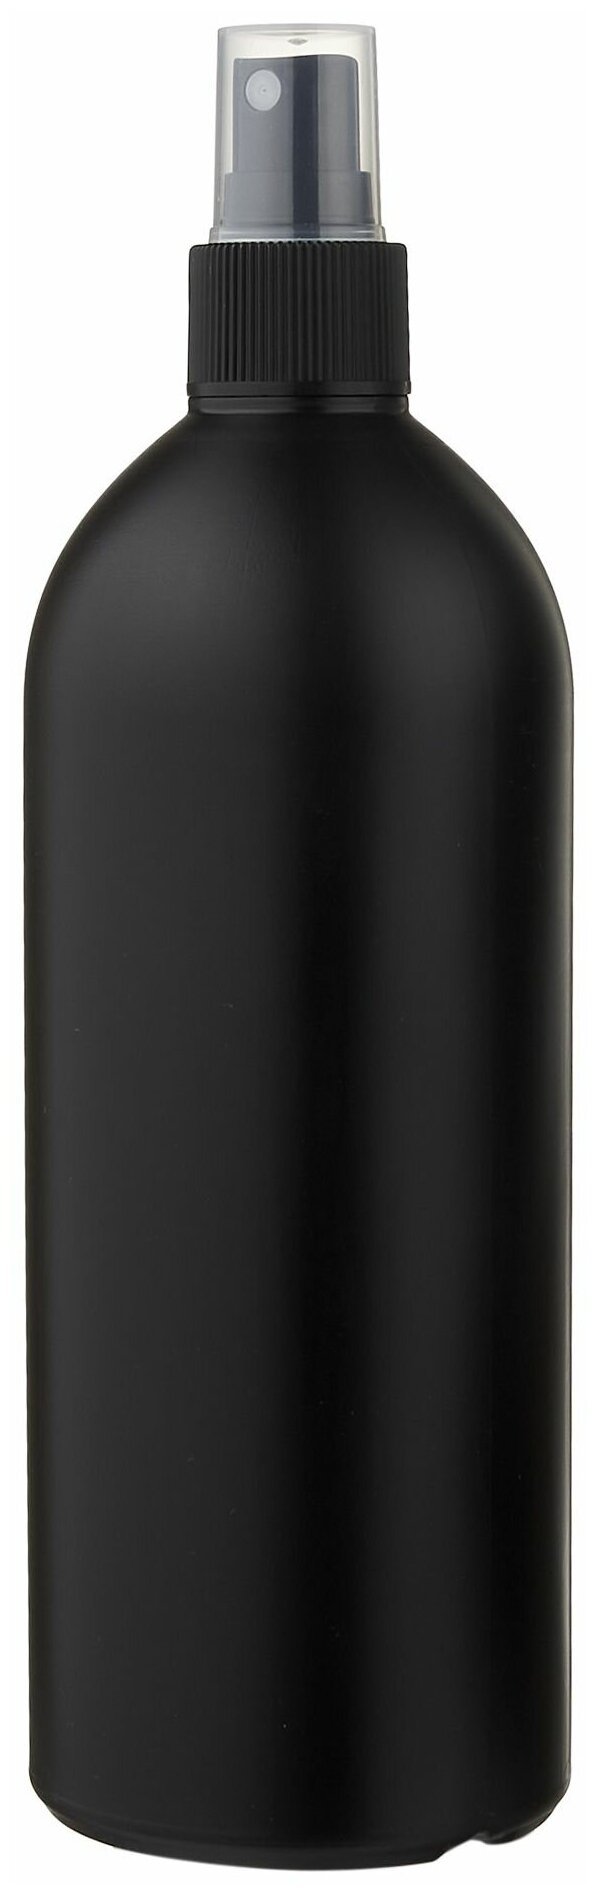 Флакон черный с черным кнопочным распылителем для духов, лосьона, антисептика - 500мл. (4 штуки)